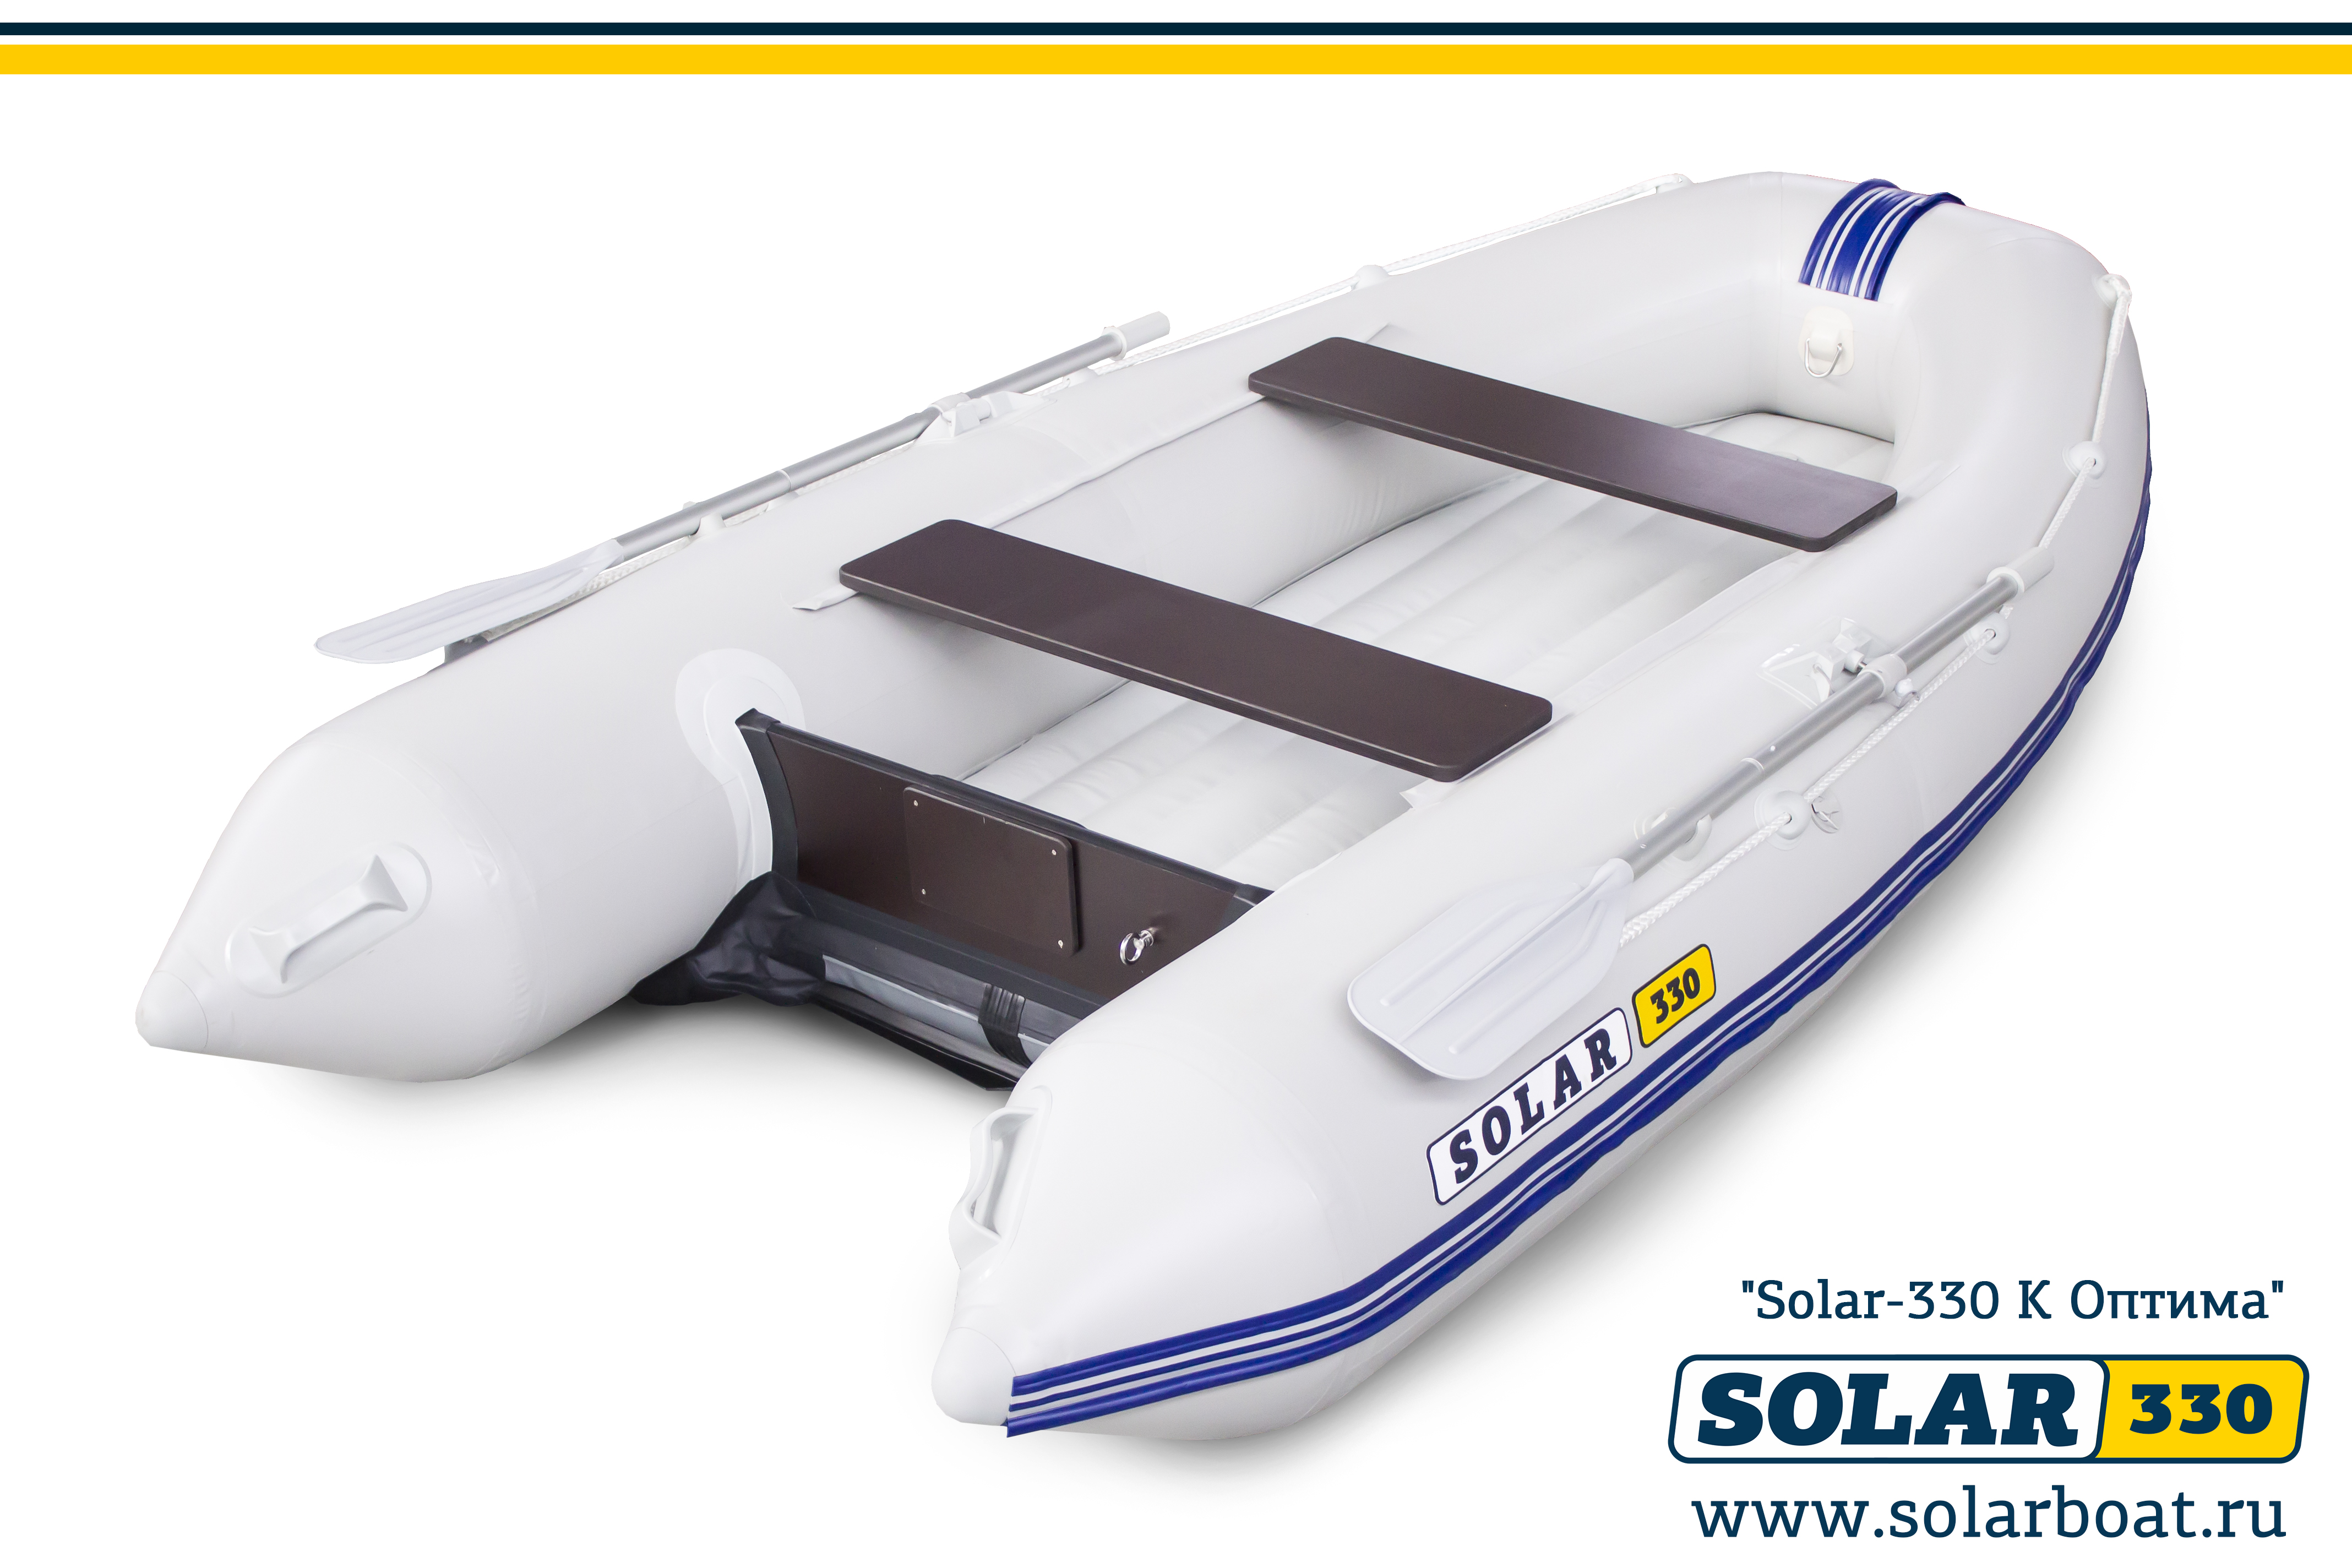 मोटर inflatable नाव सौर-330 के (ऑप्टिमा)